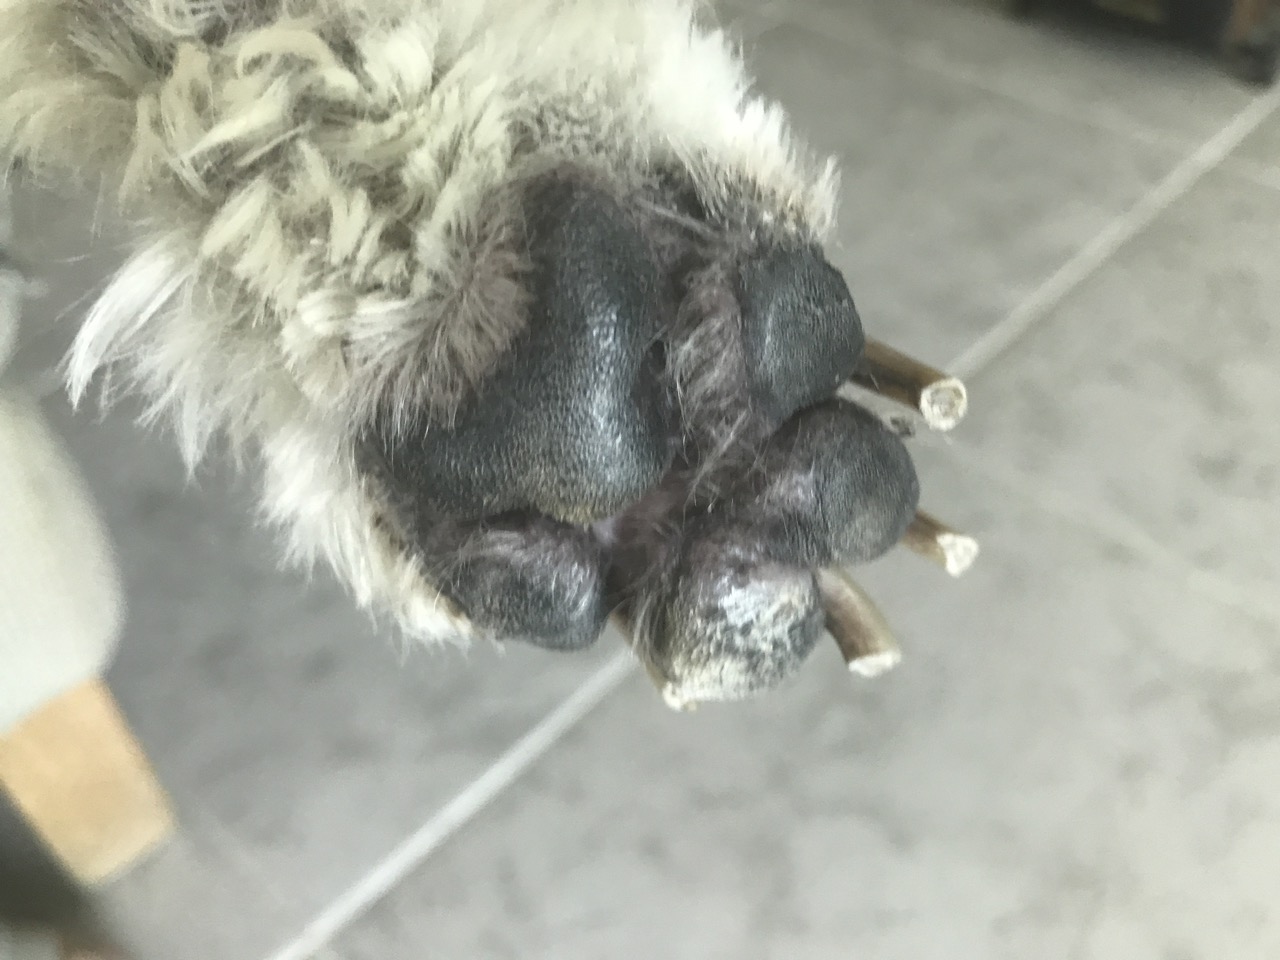 Macro of white dog paw stock image. Image of paws, sheep - 84600815